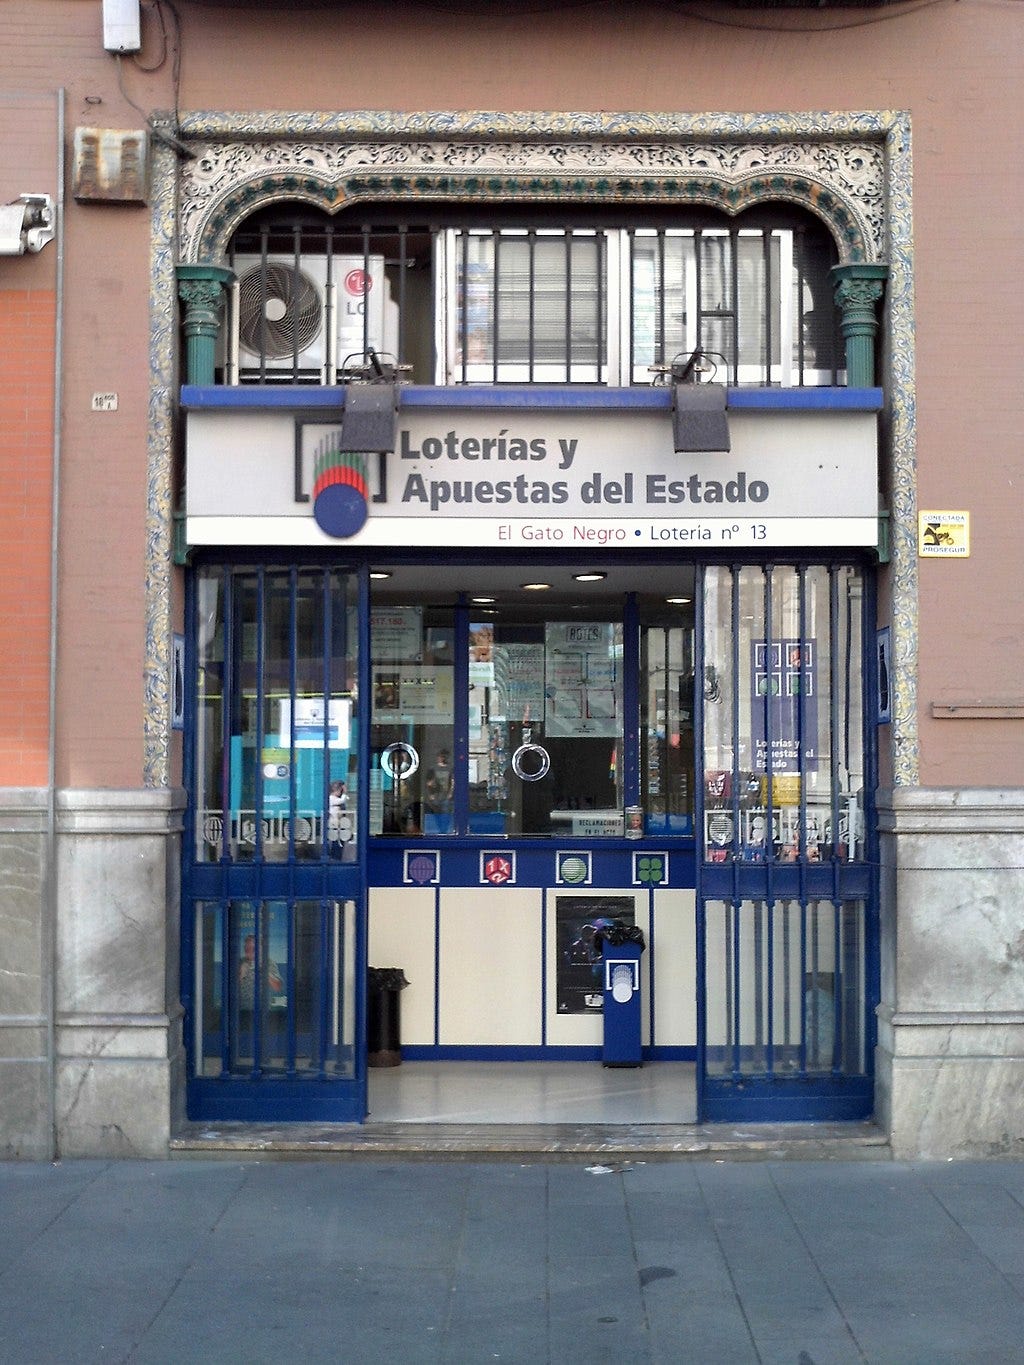 L'ingresso di un punto vendita ufficiale di Loterías y Apuestas del Estado: li riconosci per l'insegna e per gli infissi colorati di azzurro.